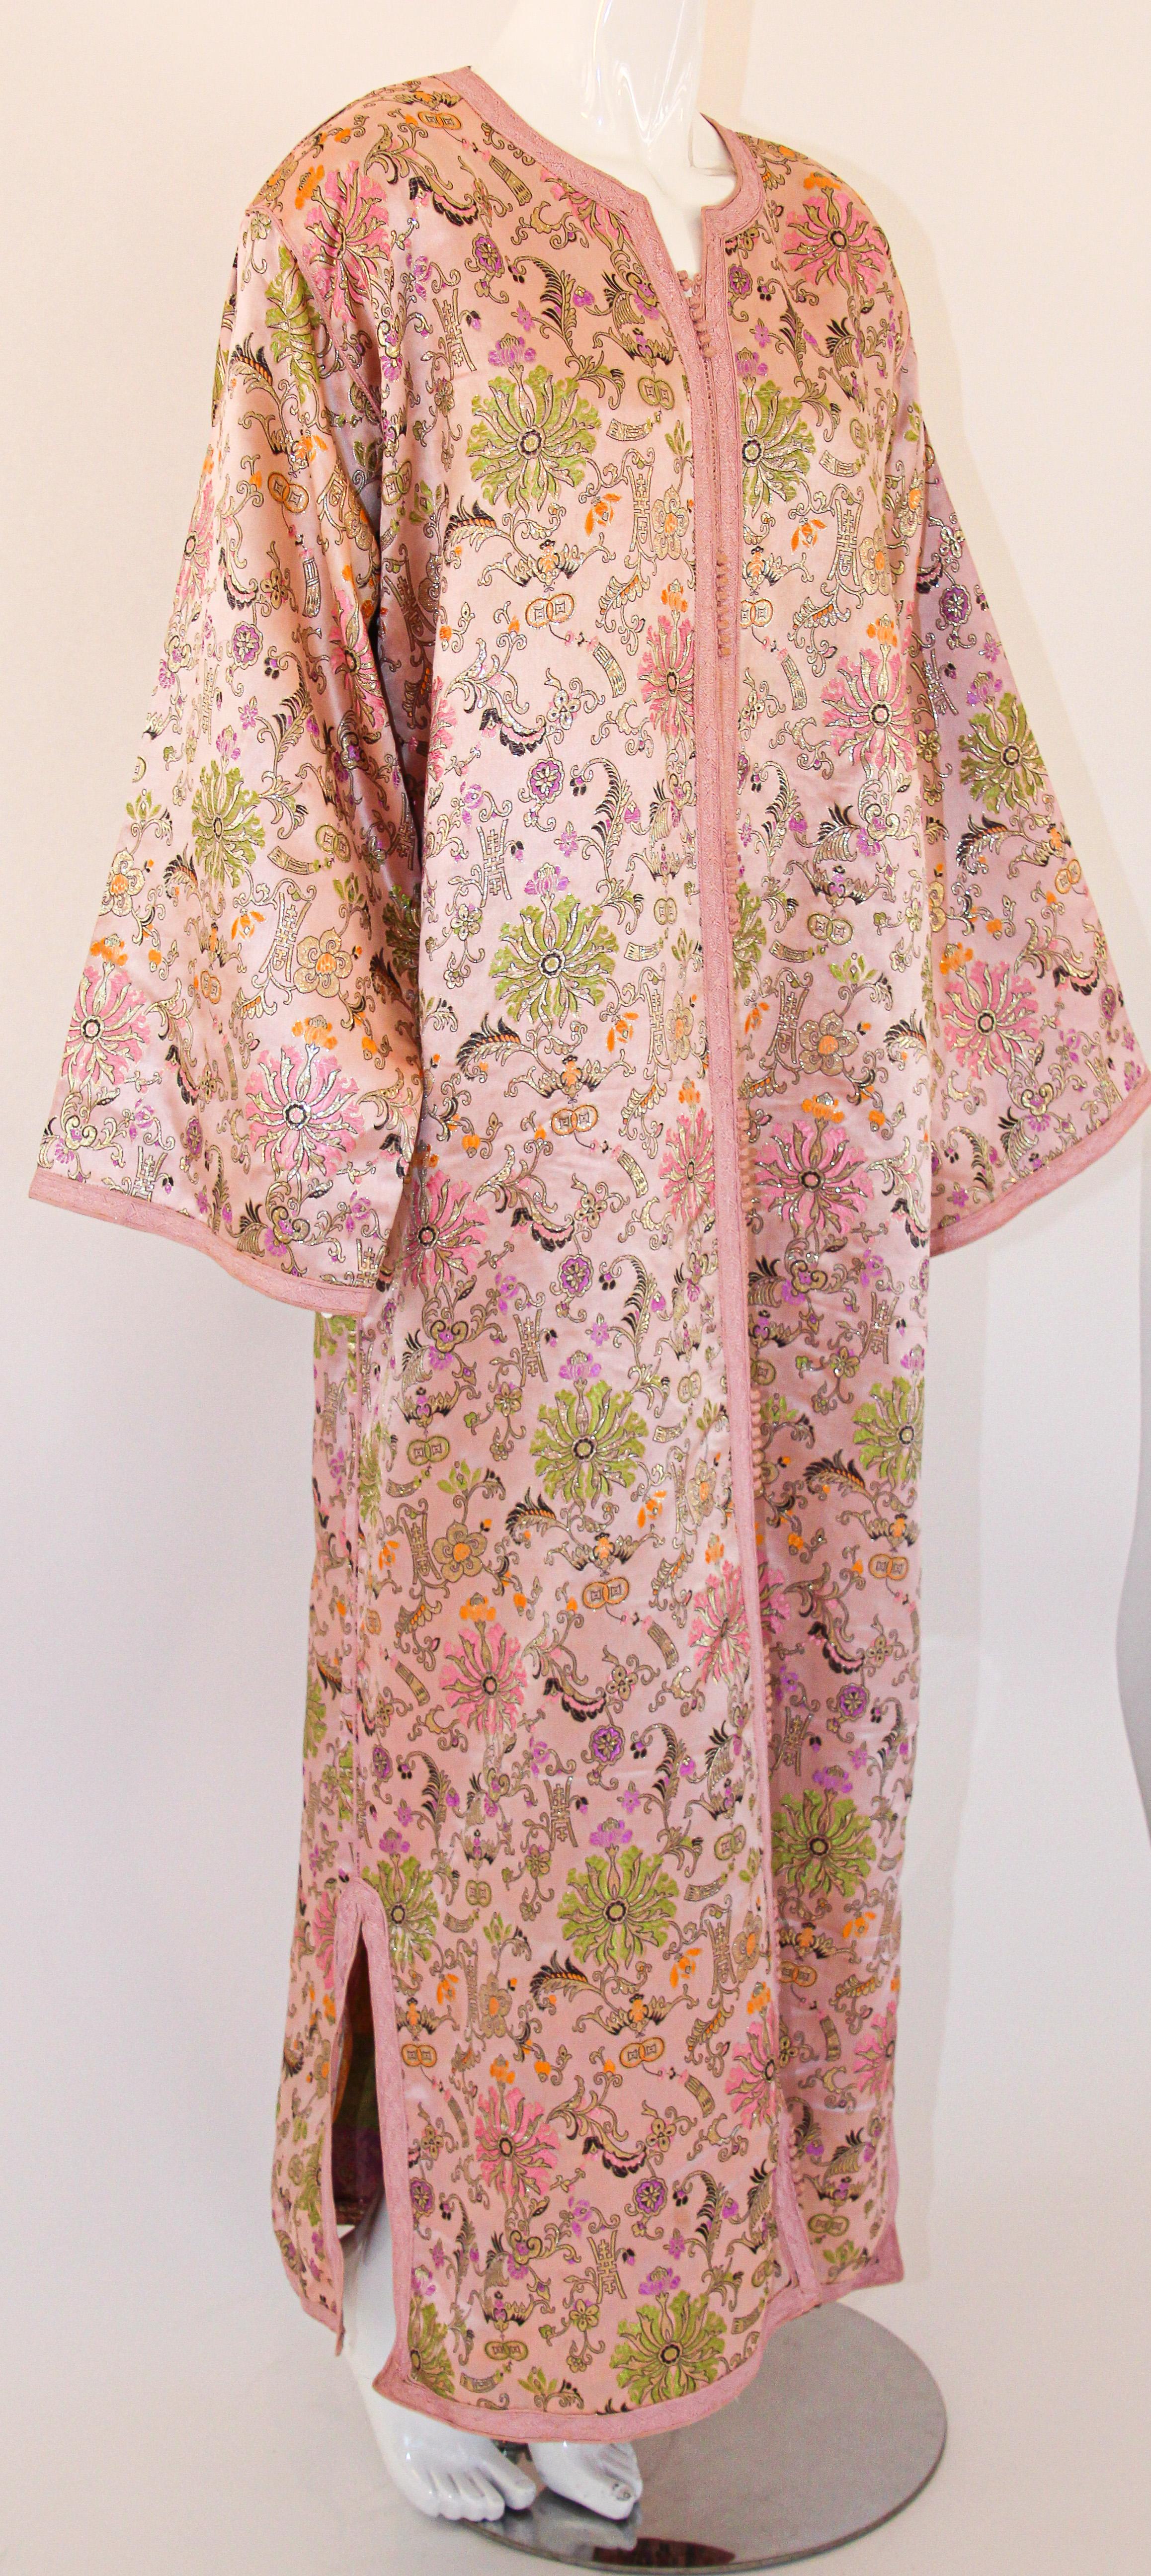 Magnifique caftan marocain vintage en tissu floral damassé rose.
Cette robe maxi caftan bohème chic est une robe de soirée marocaine moyen-orientale unique en son genre.
Vintage exotique des années 1970 rose et vert maxi robe kaftan fait à la main